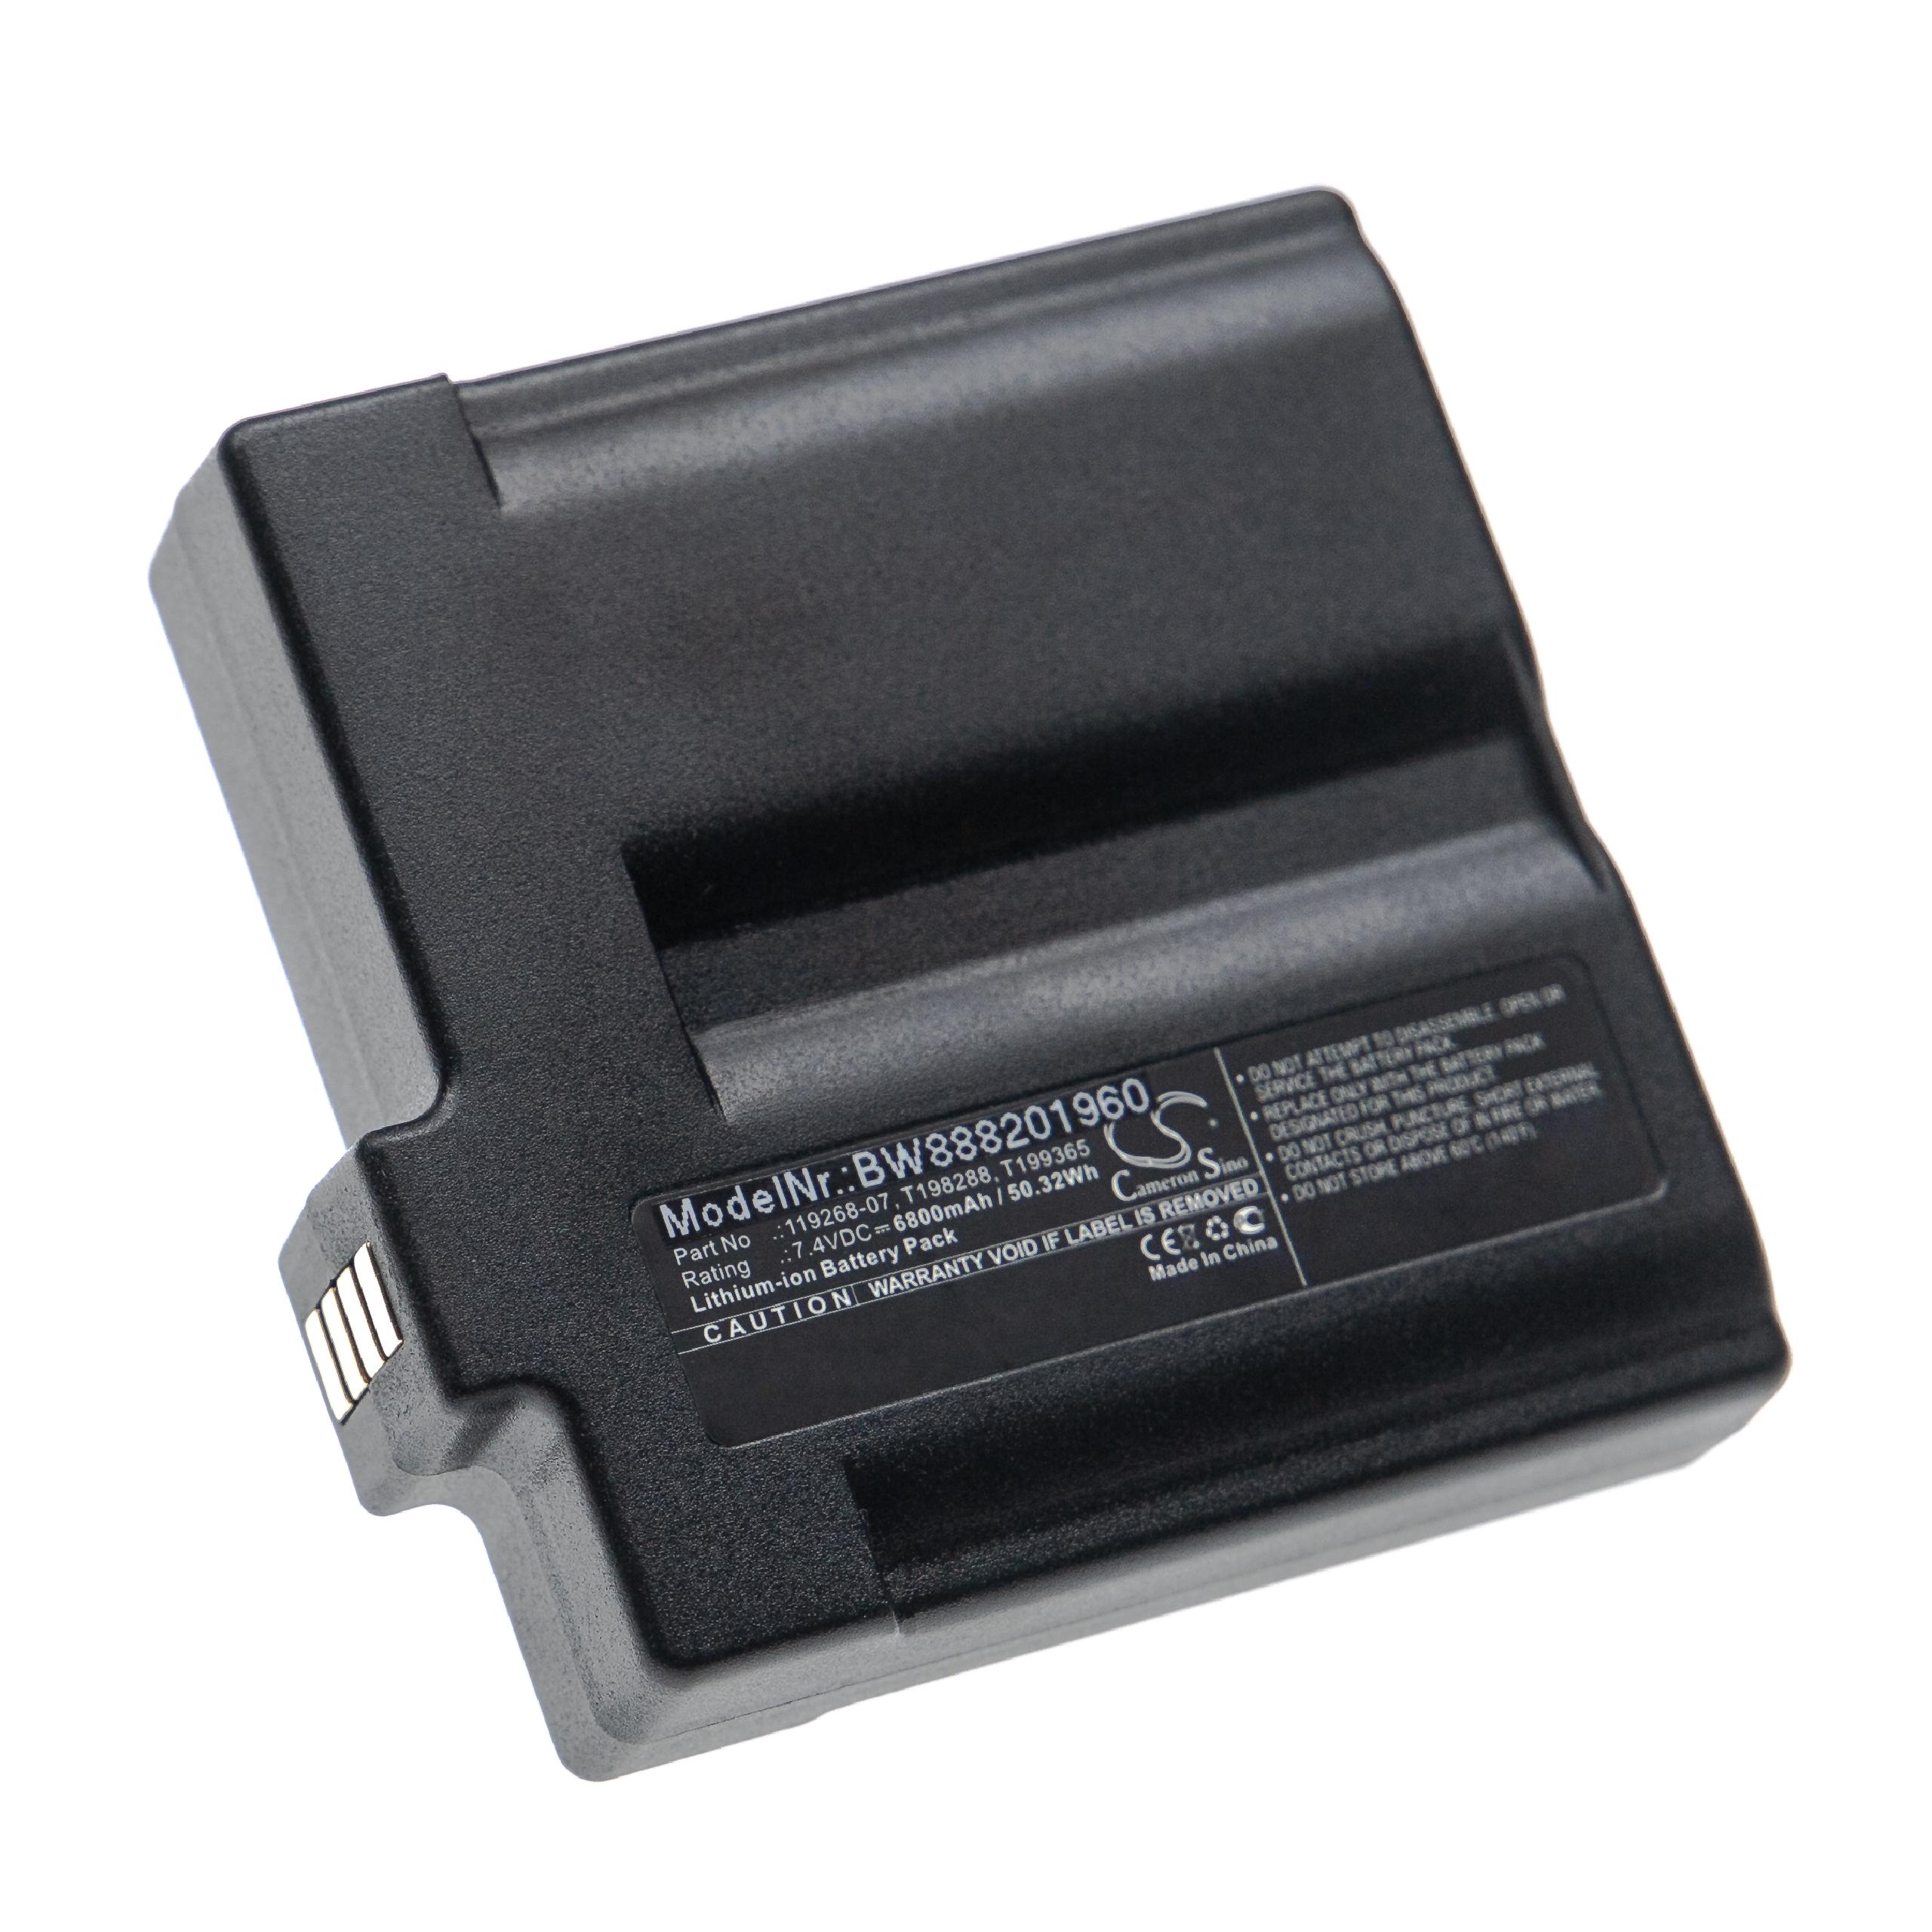 Thermal Imaging Camera Battery Replacement for Flir T198288, 119268-07, T199365 - 6800mAh 7.4V Li-Ion